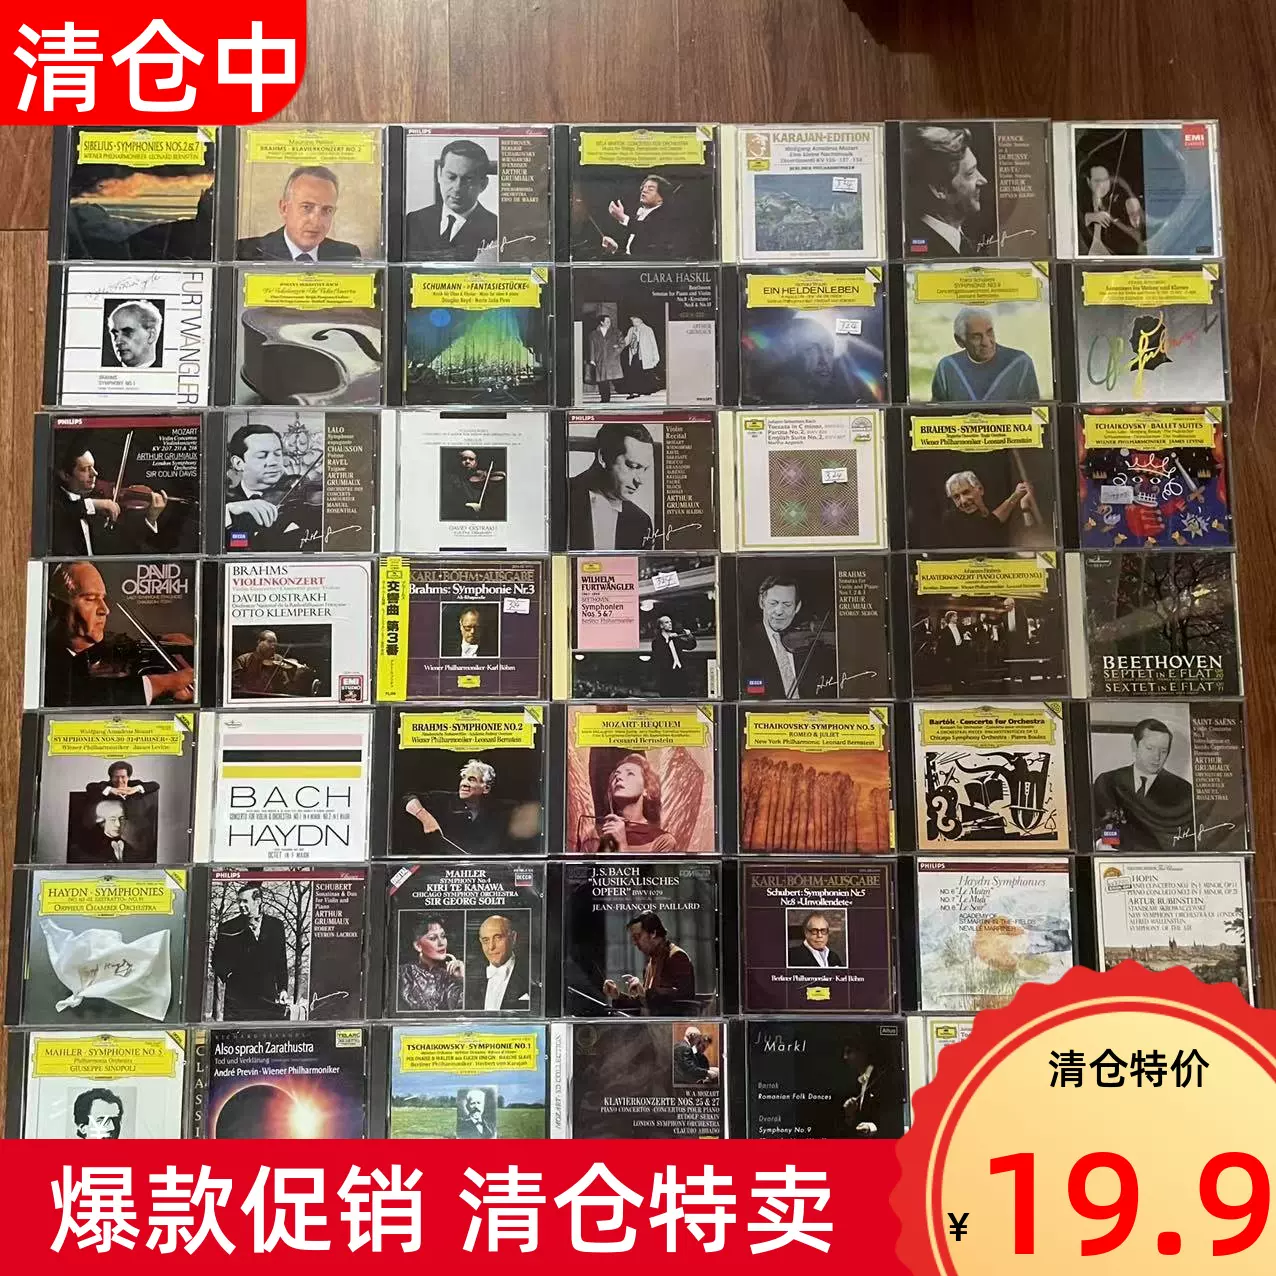 福山雅治Masaharu Fukuyama 生きてる生きてく拆封CD+DVD-Taobao